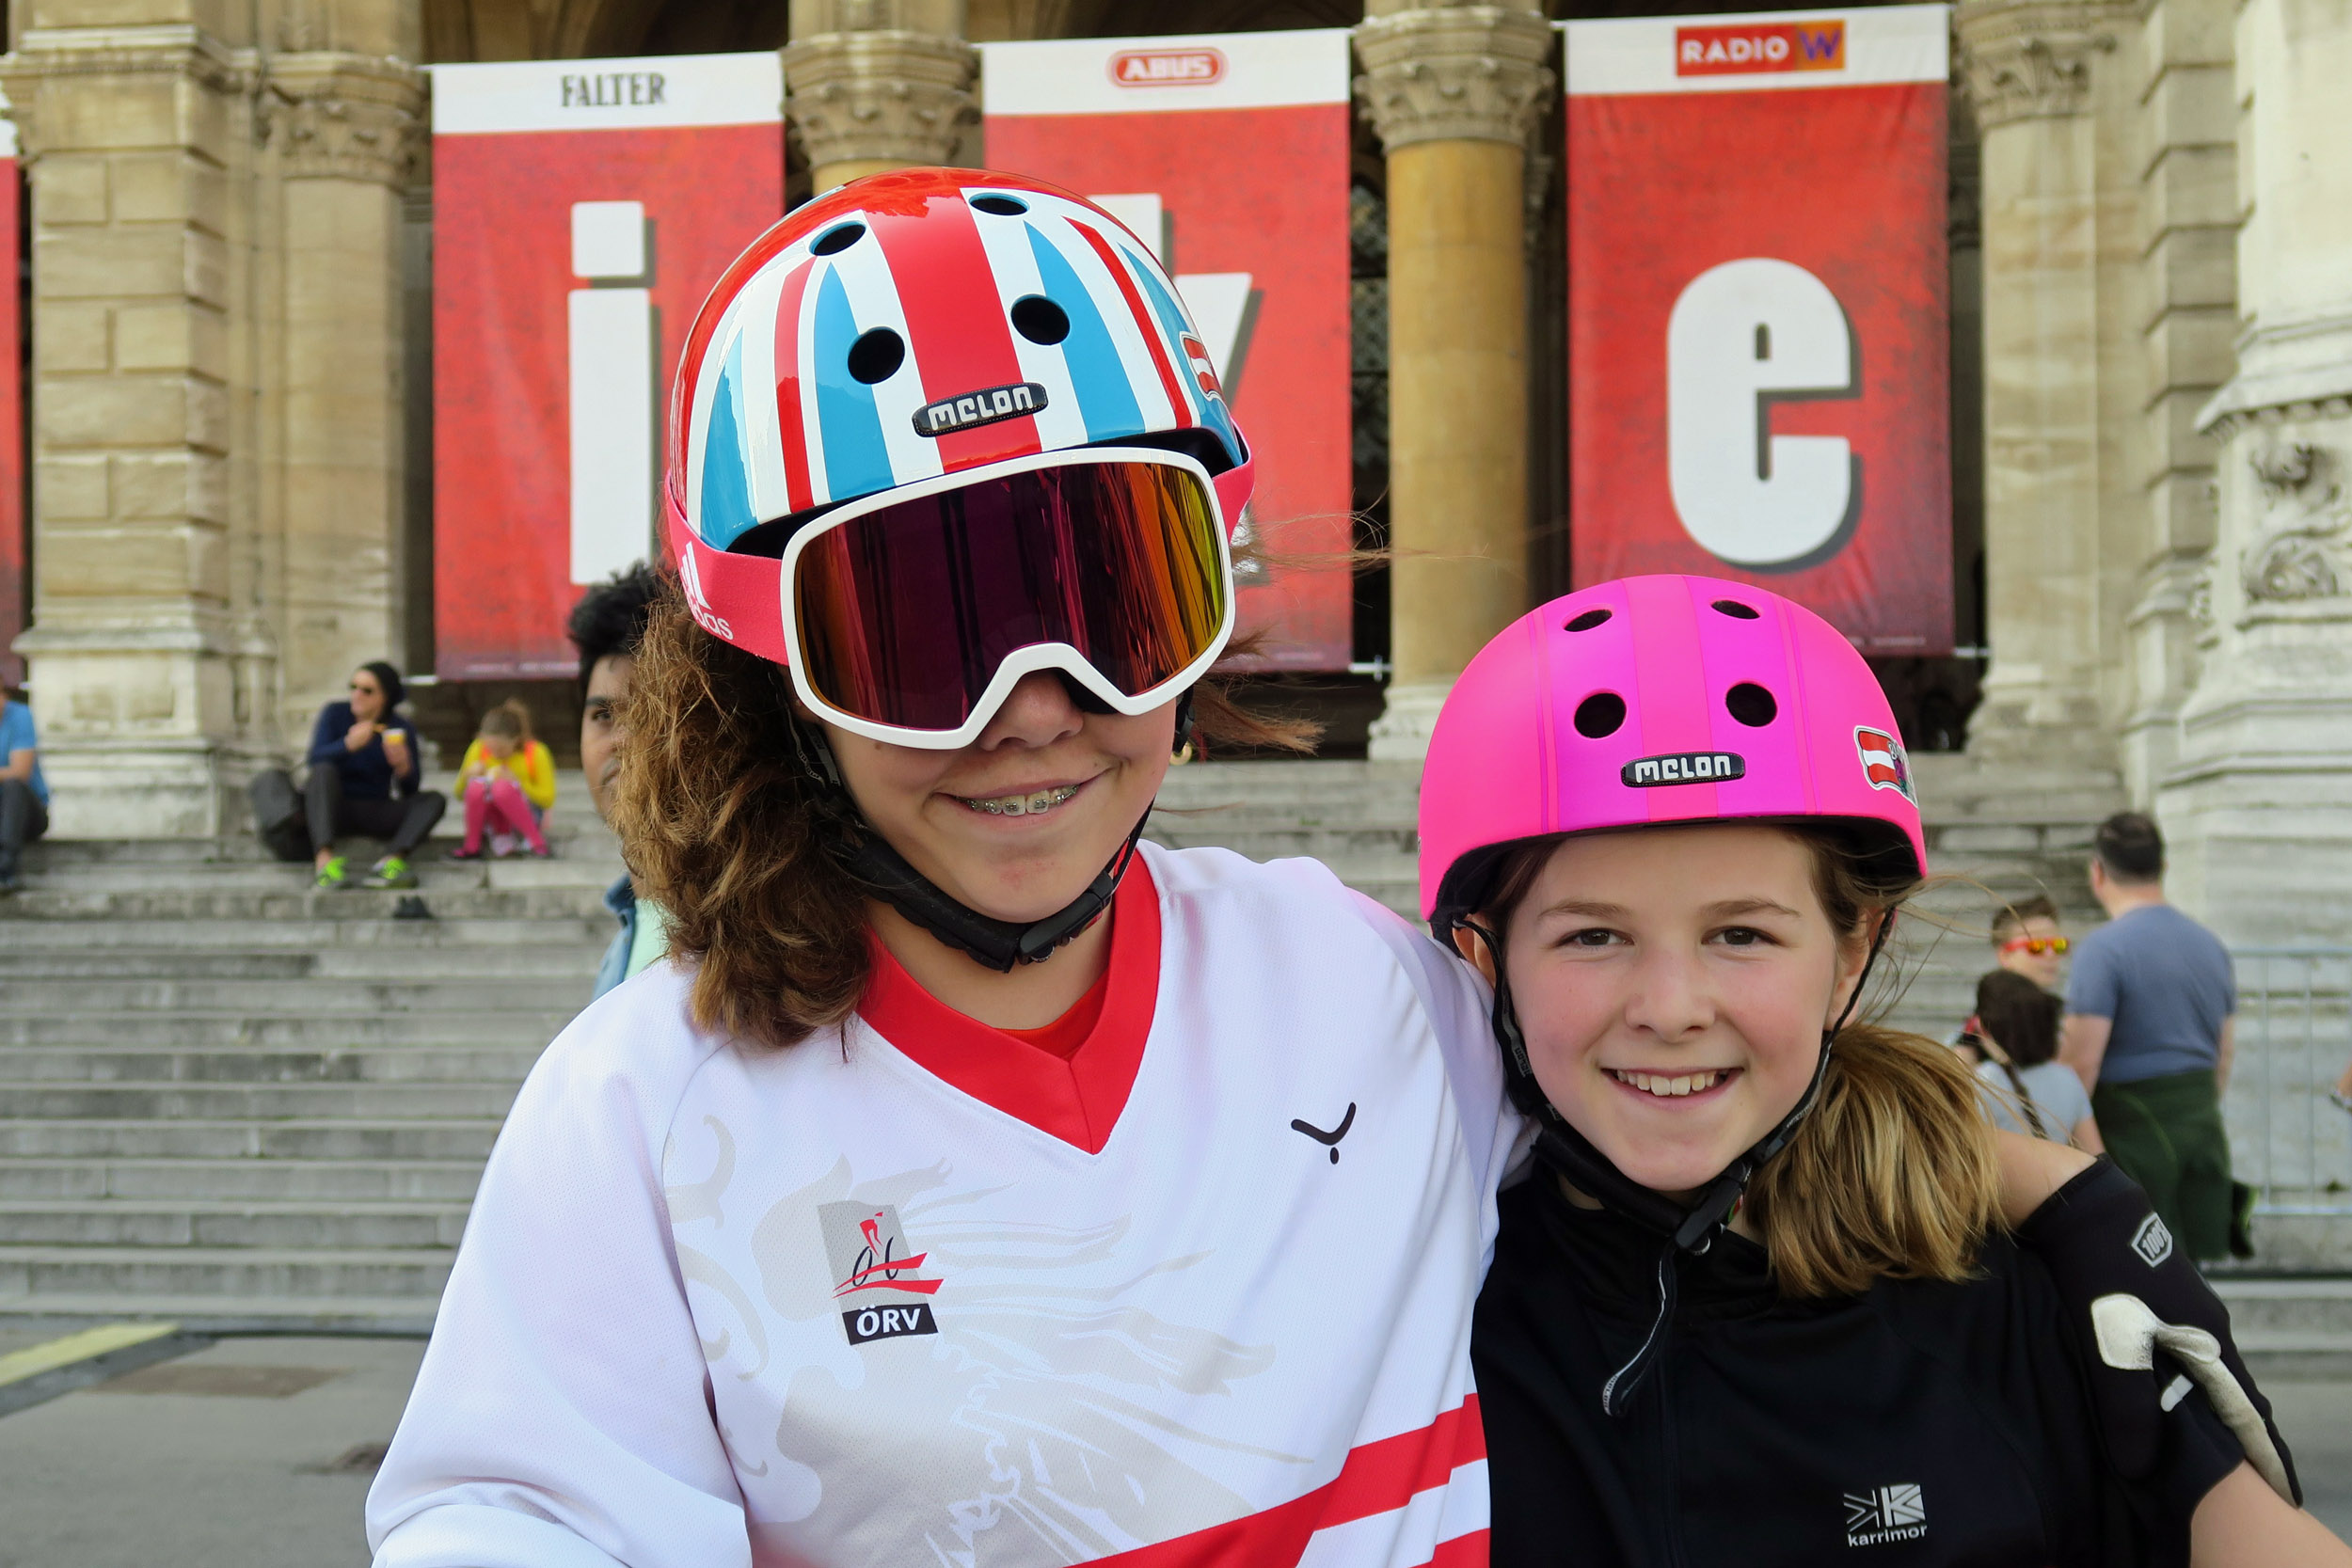 Gemeinsam mit ihrer Schwester Emilie (11) versuchte sich die zwölfjährige Niederösterreicherin an sämtlichen Attraktionen, die das Festival zu bieten hatte: